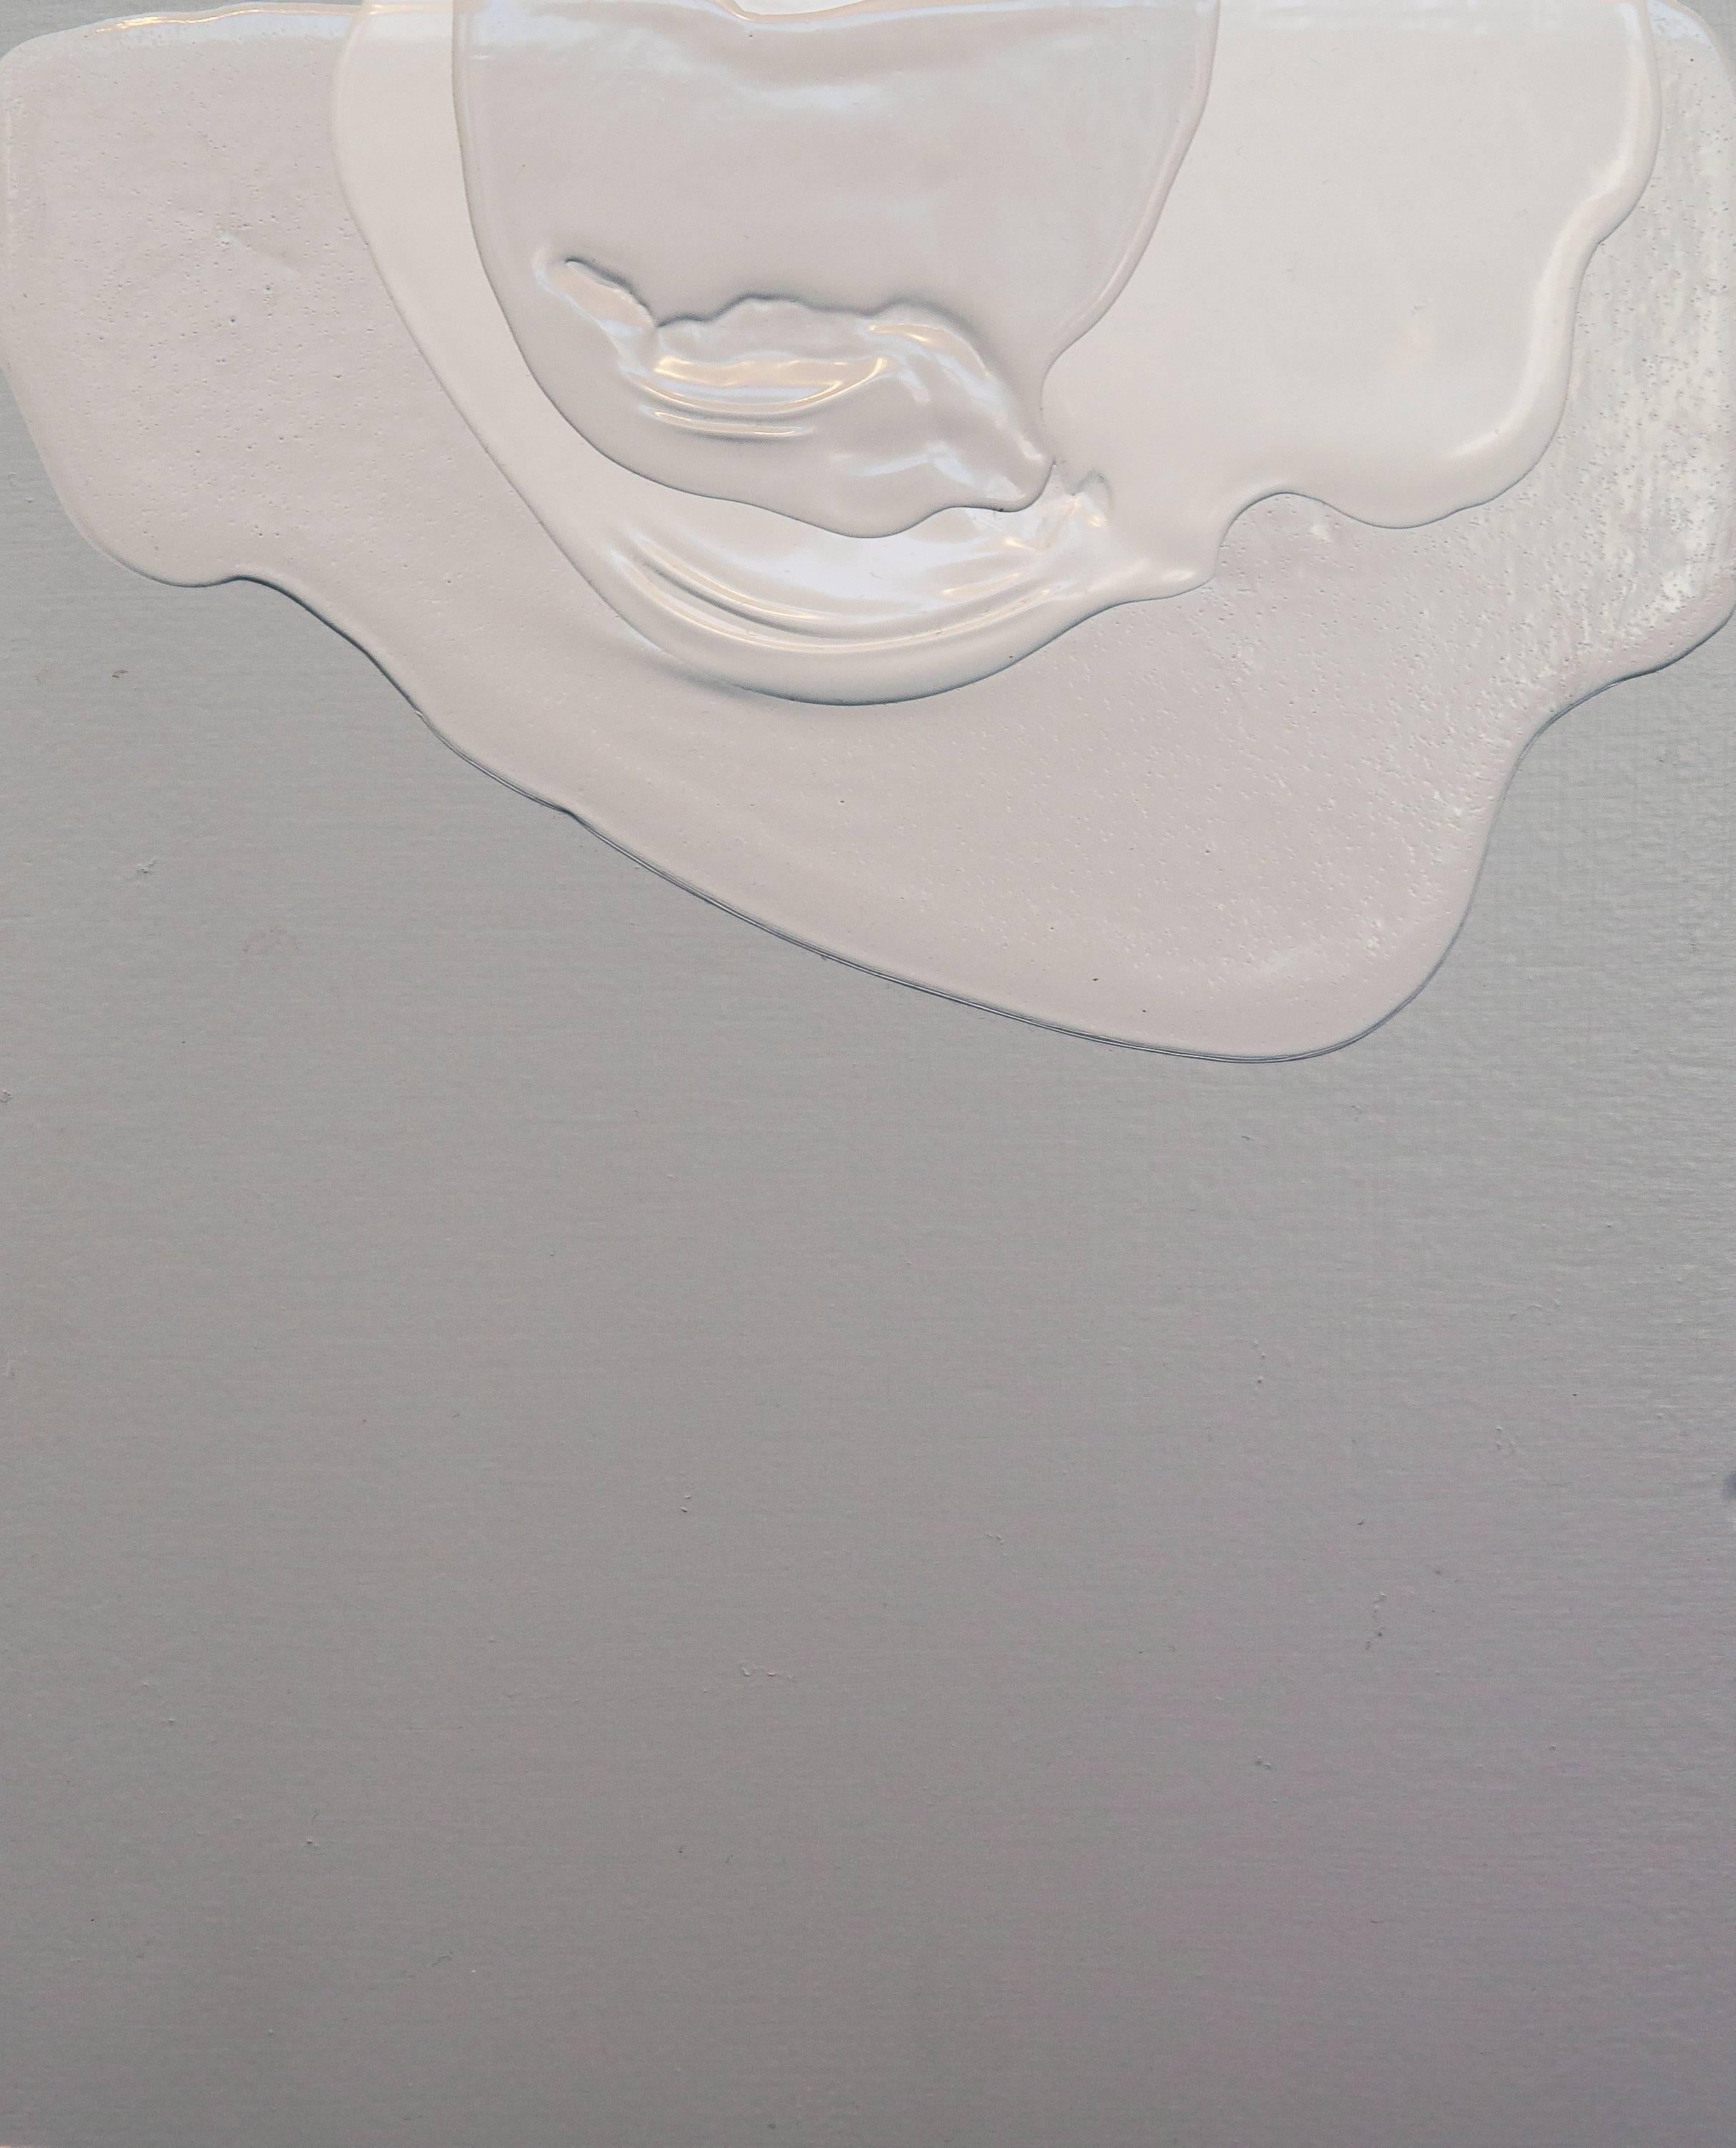 Abstract Painting Renee Phillips - Méditation XX - peinture abstraite texturée bleue blanche sur panneau de bois